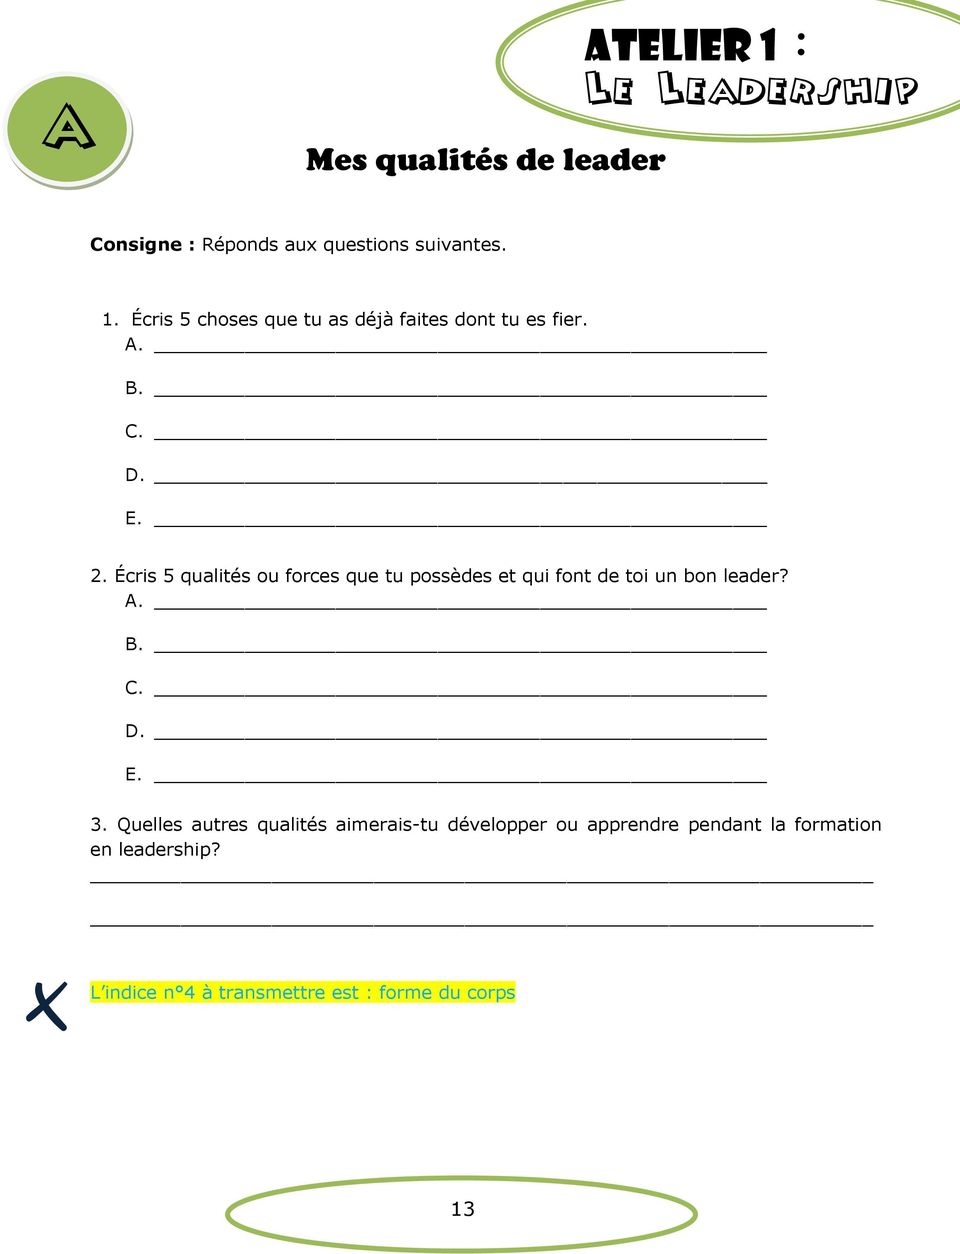 Quelles autres qualités aimerais-tu développer ou apprendre pendant la formation en leadership?